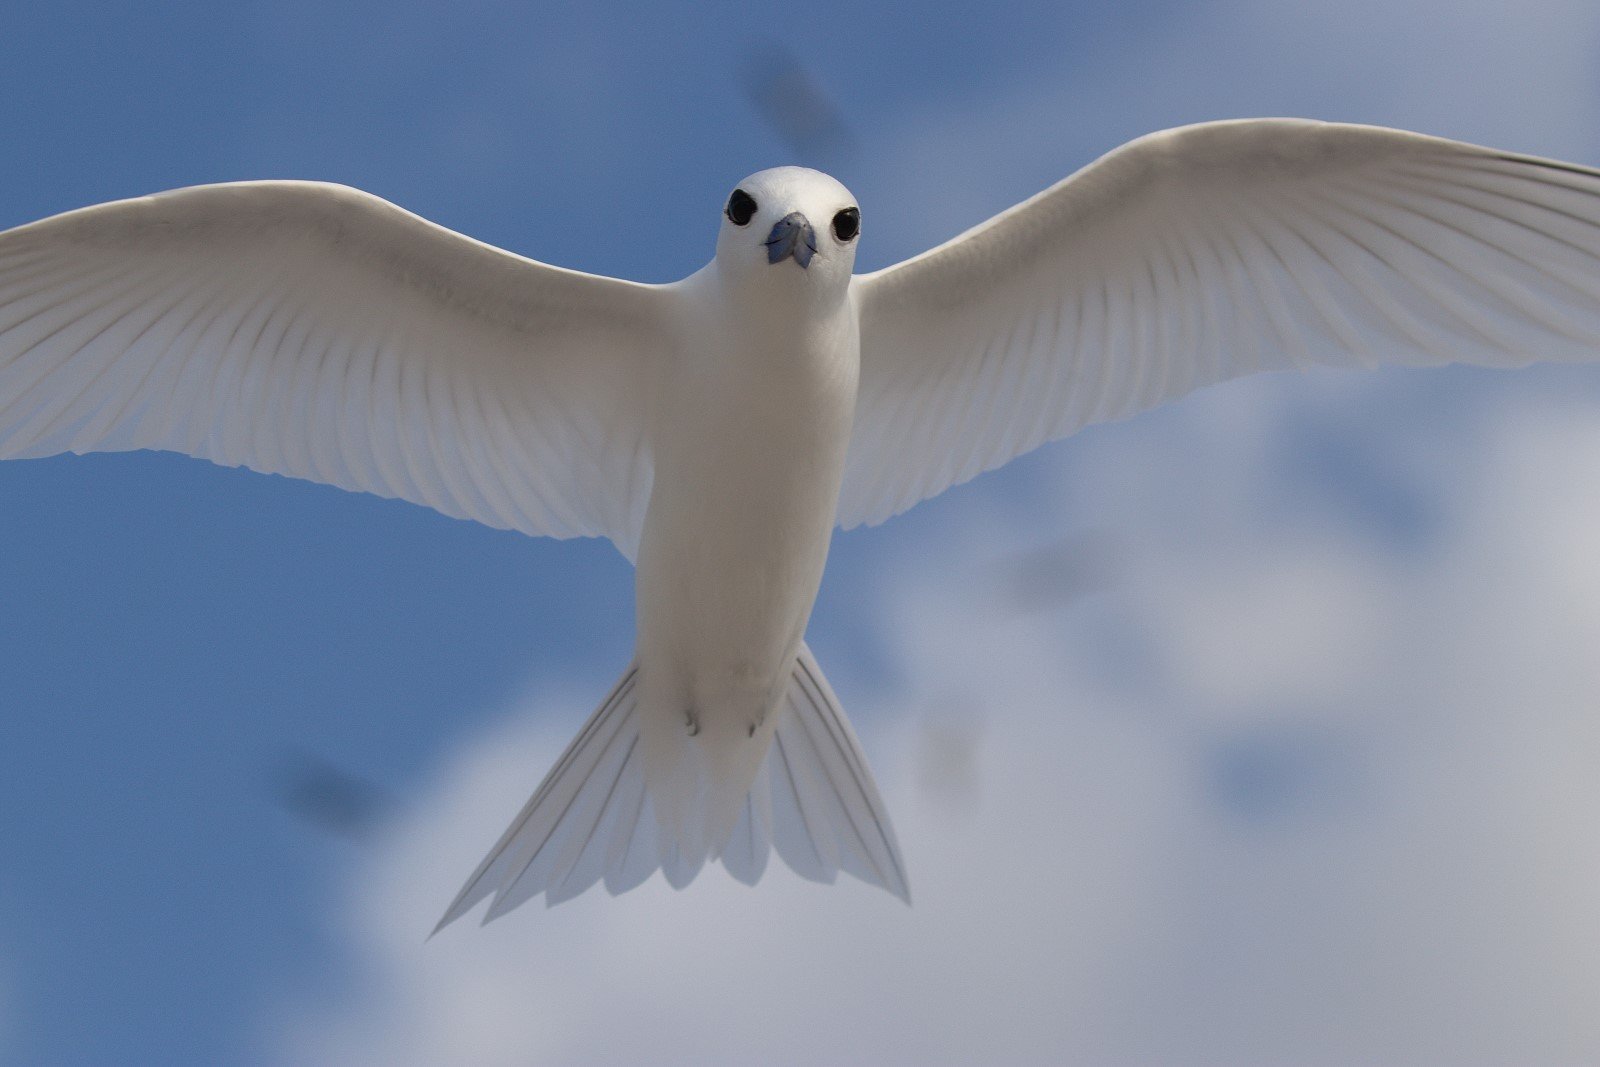 White seabird flies above